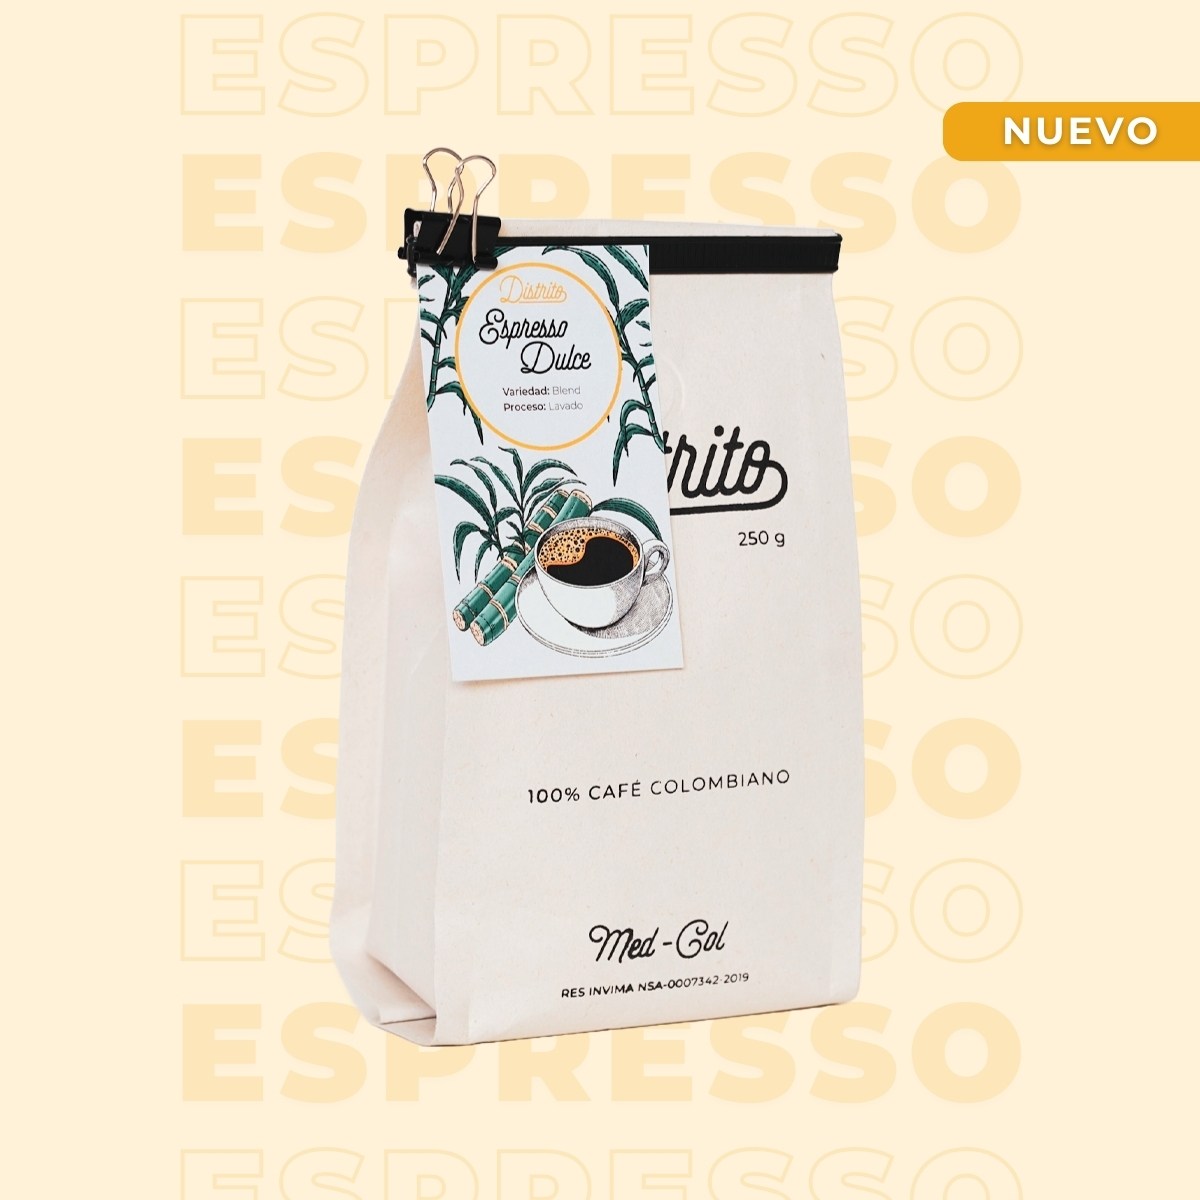 Espresso dulce - Café Especial - Espresso Dulce